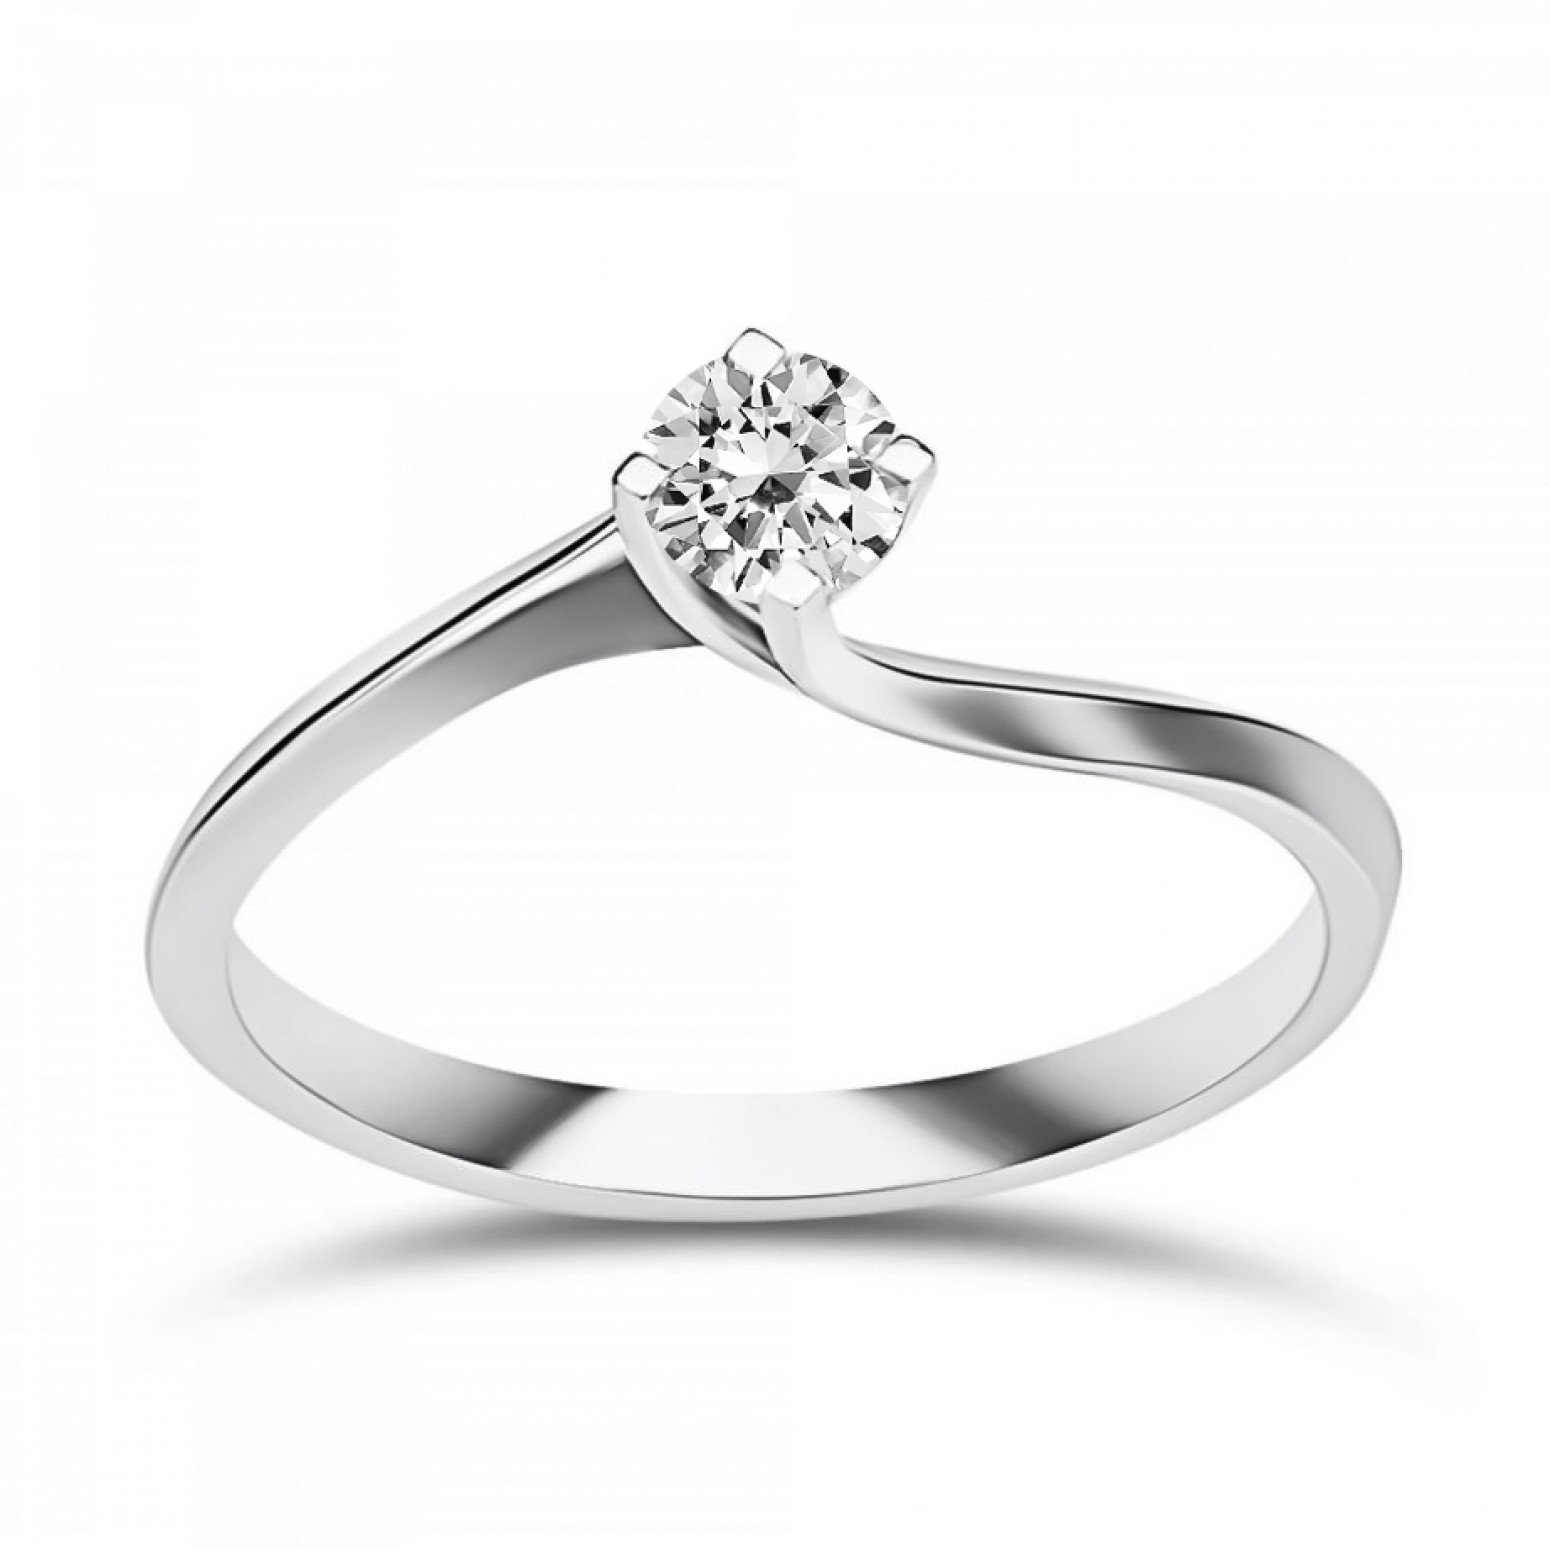 Μονόπετρο Δαχτυλίδι - Μονόπετρο δαχτυλίδι Κ18 λευκόχρυσο με διαμάντι 0.19ct, VS2, G από το IGL, da4174 ΔΑΧΤΥΛΙΔΙΑ ΑΡΡΑΒΩΝΑ Κοσμηματα - chrilia.gr